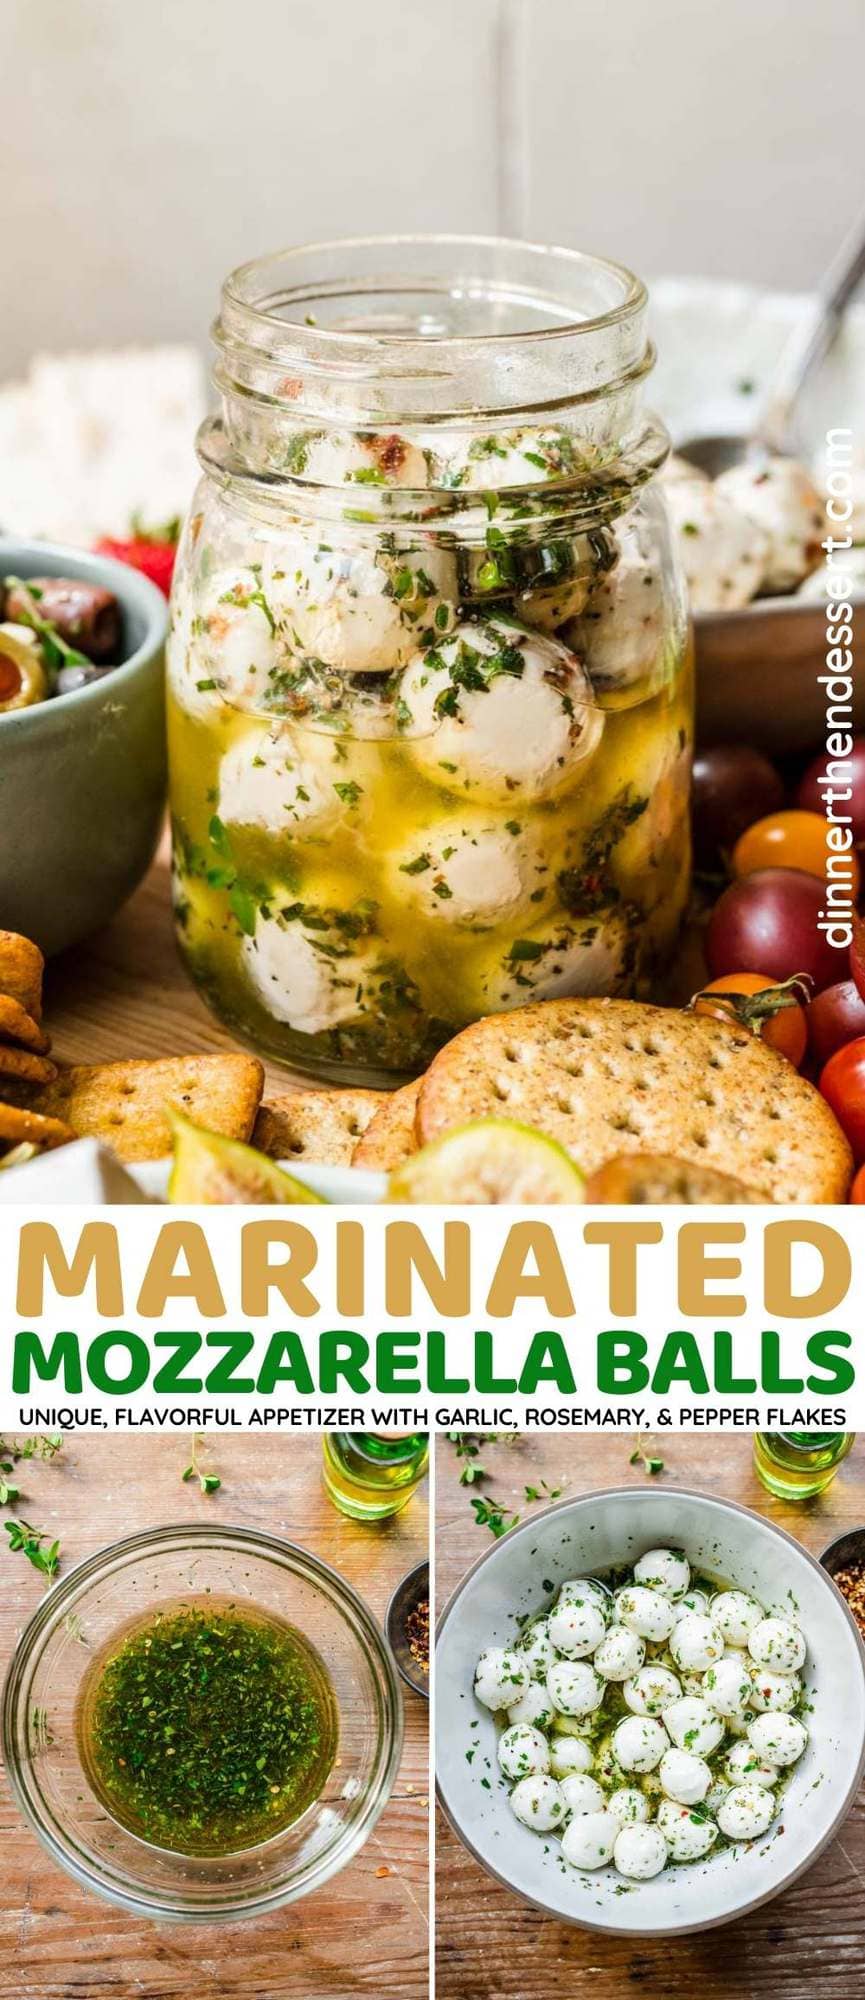 Marinated Mozzarella Balls collage